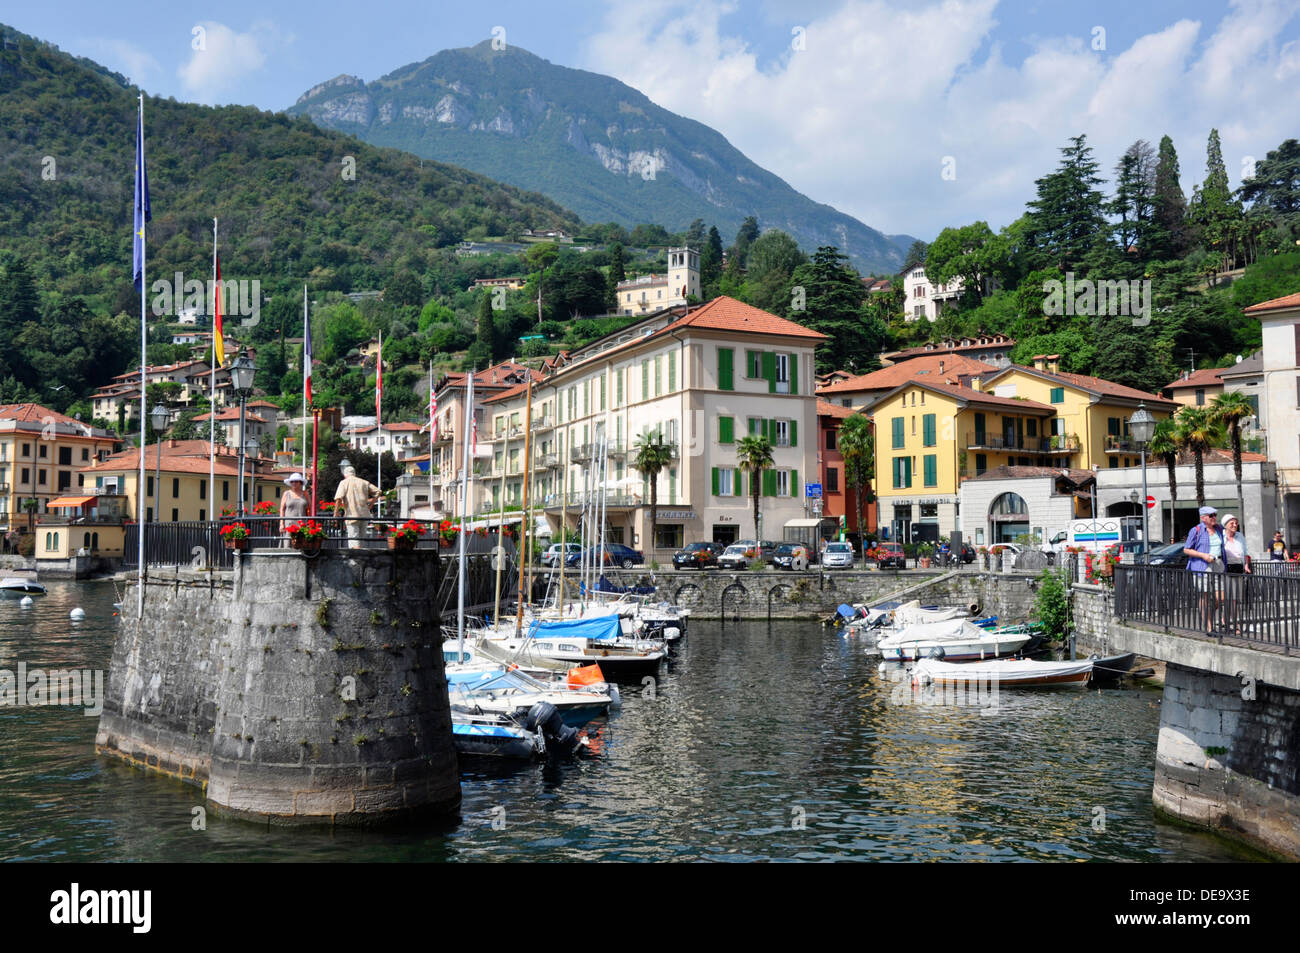 Italie - Lac de Come - Menaggio - le port - la location de bateaux - Réflexions - toile de fond de la ville et les montagnes lointaines Banque D'Images